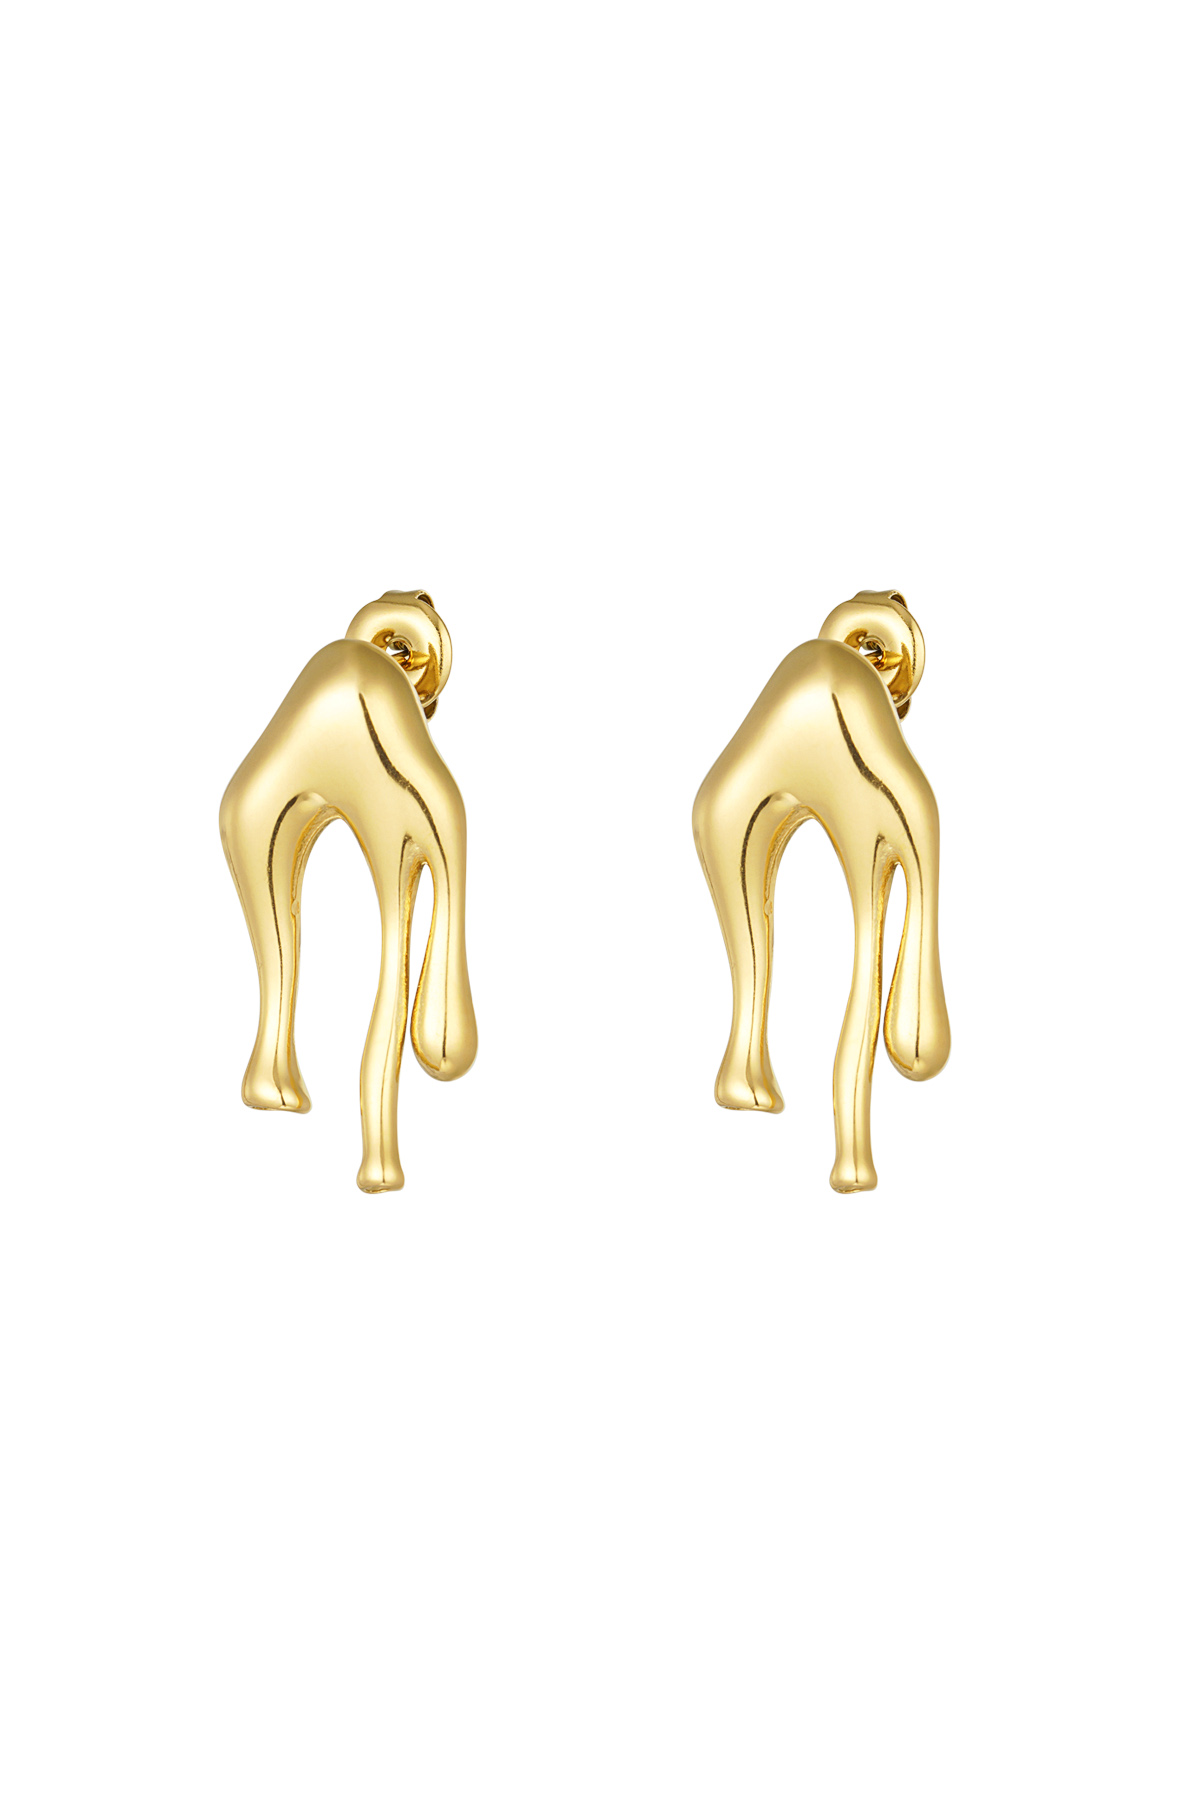 Drip it earrings - gold